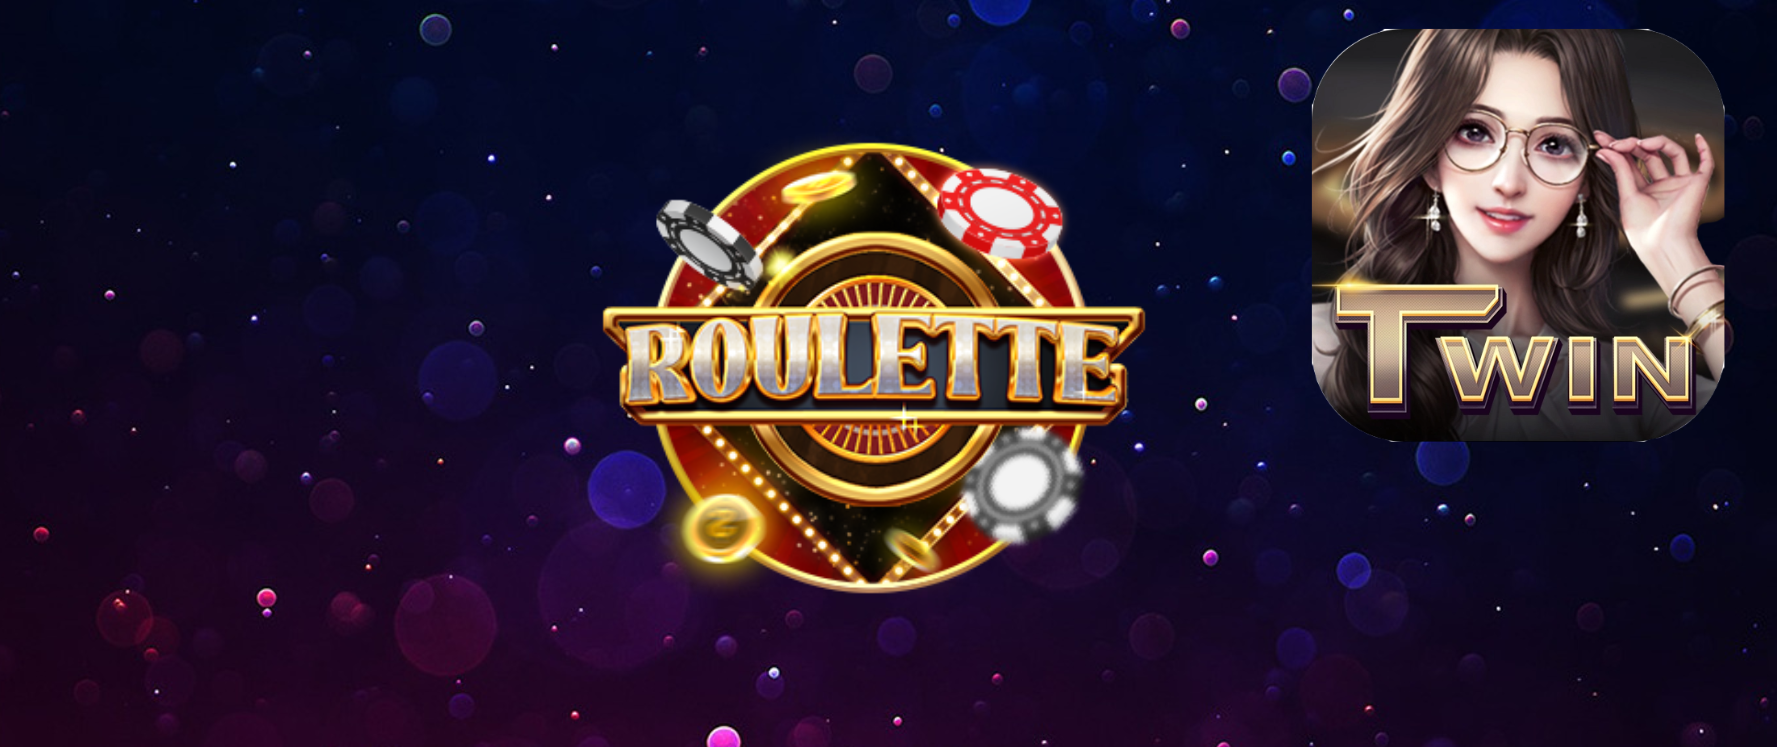 Game cá cược roulette twin